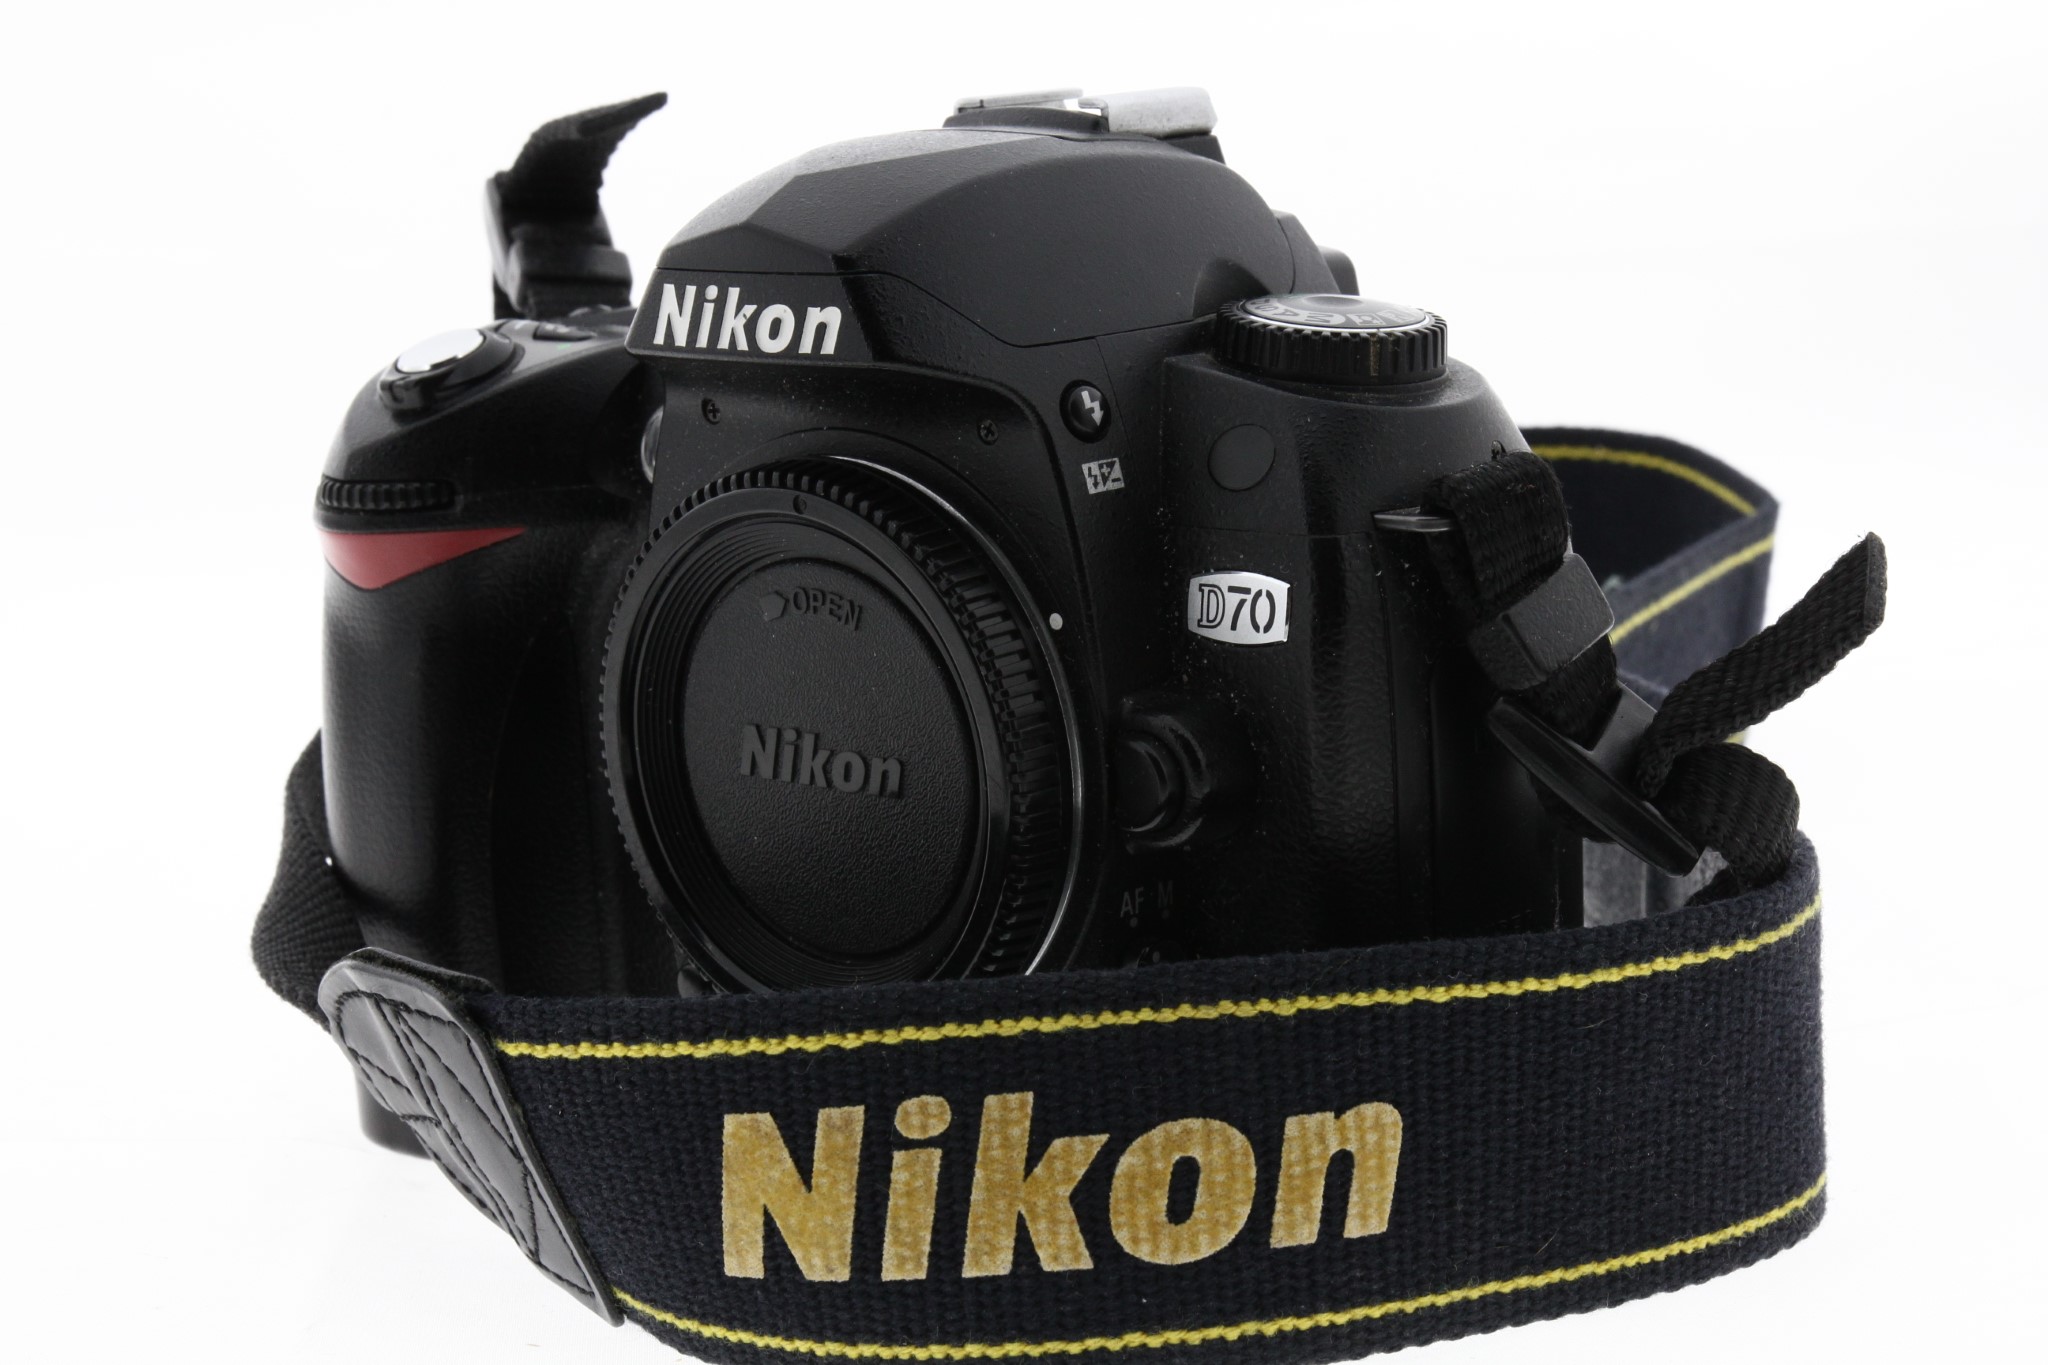 Zrcadlovka Nikon D70 + příslušenství